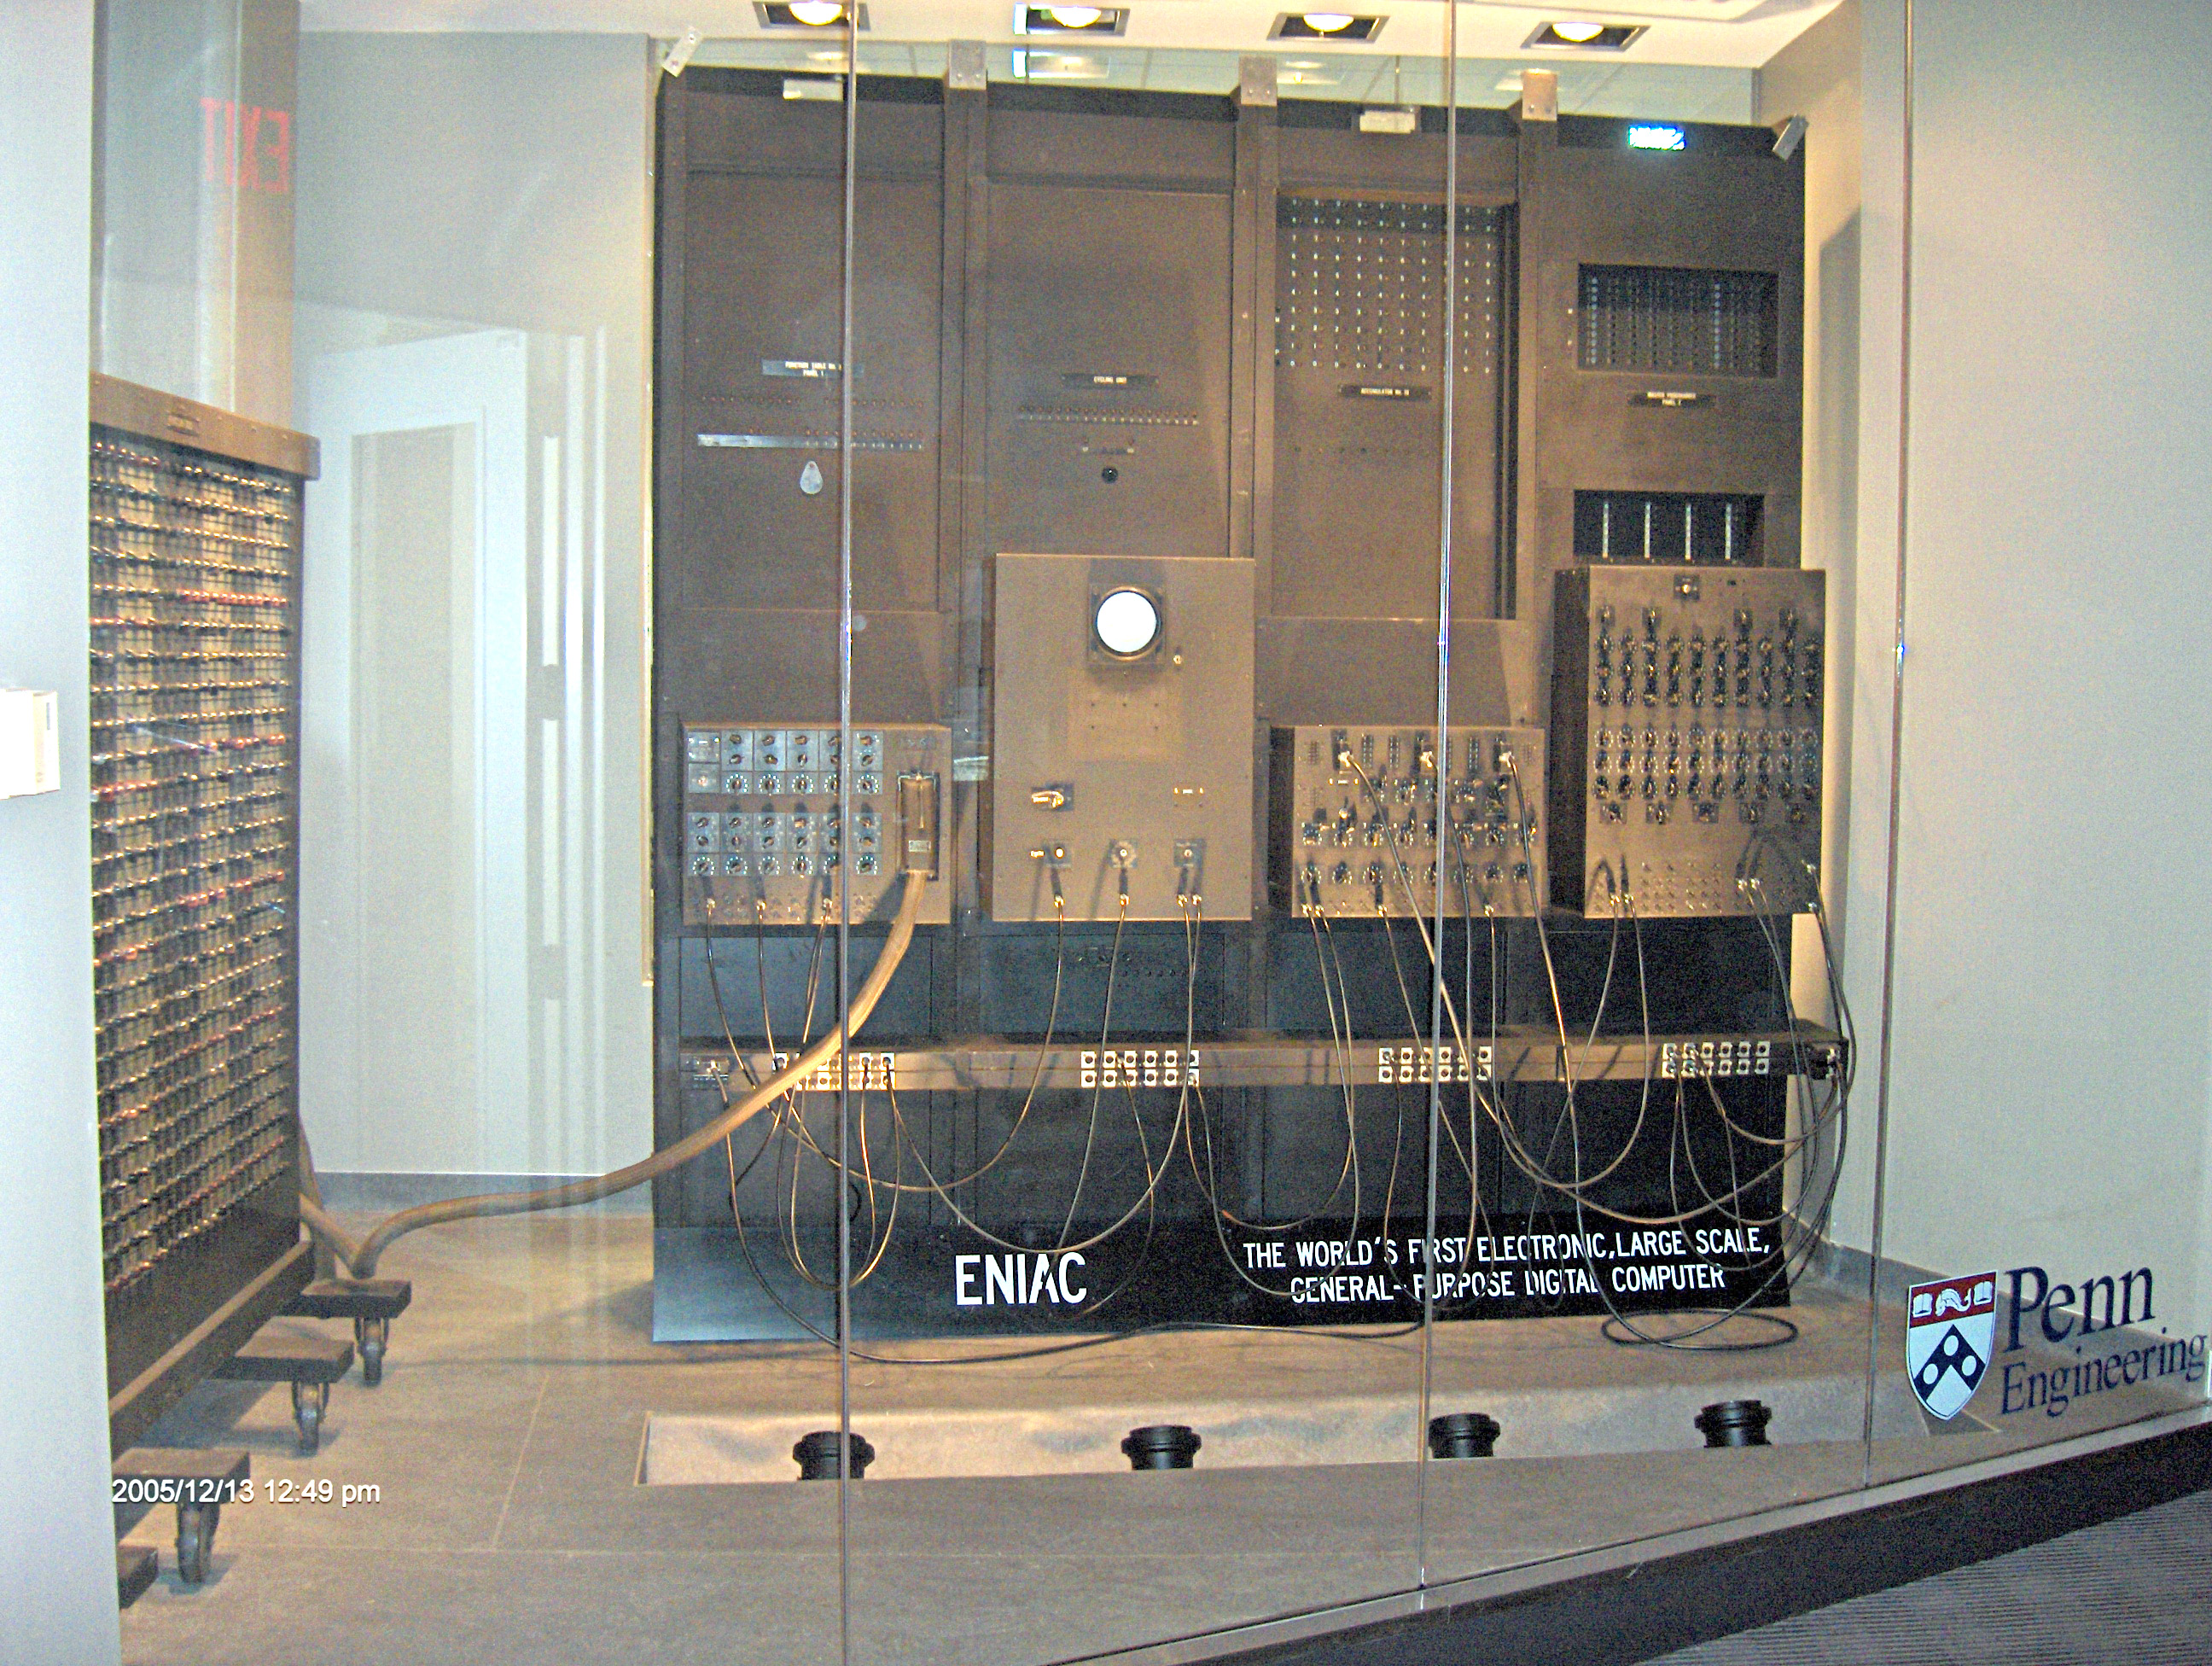 Доклад по теме ENIAC